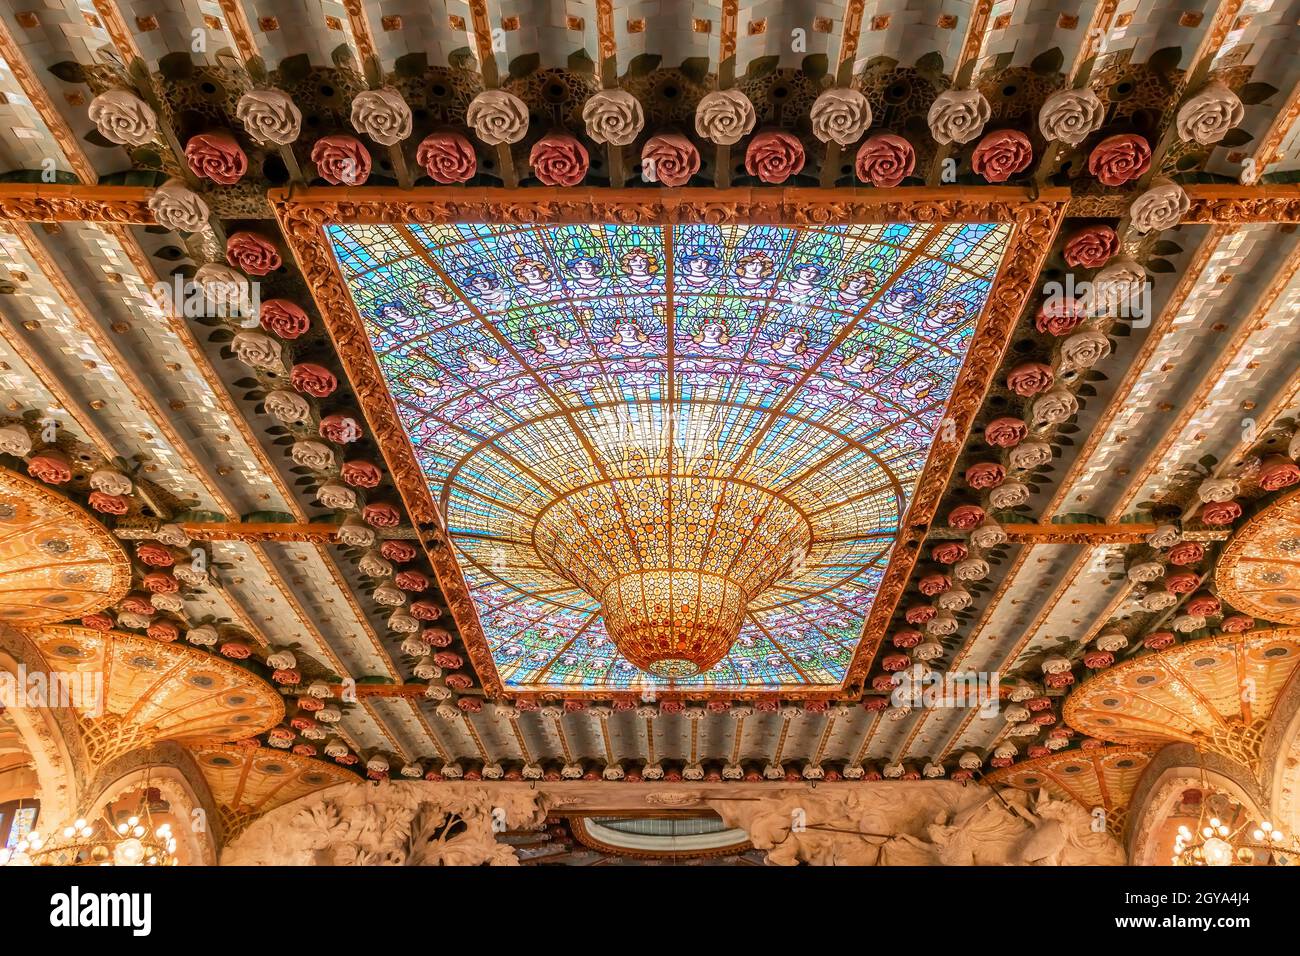 Barcelone, Espagne-27 septembre 2021 : détail du plafond en vitraux du Palau de la Música Catalana. Banque D'Images